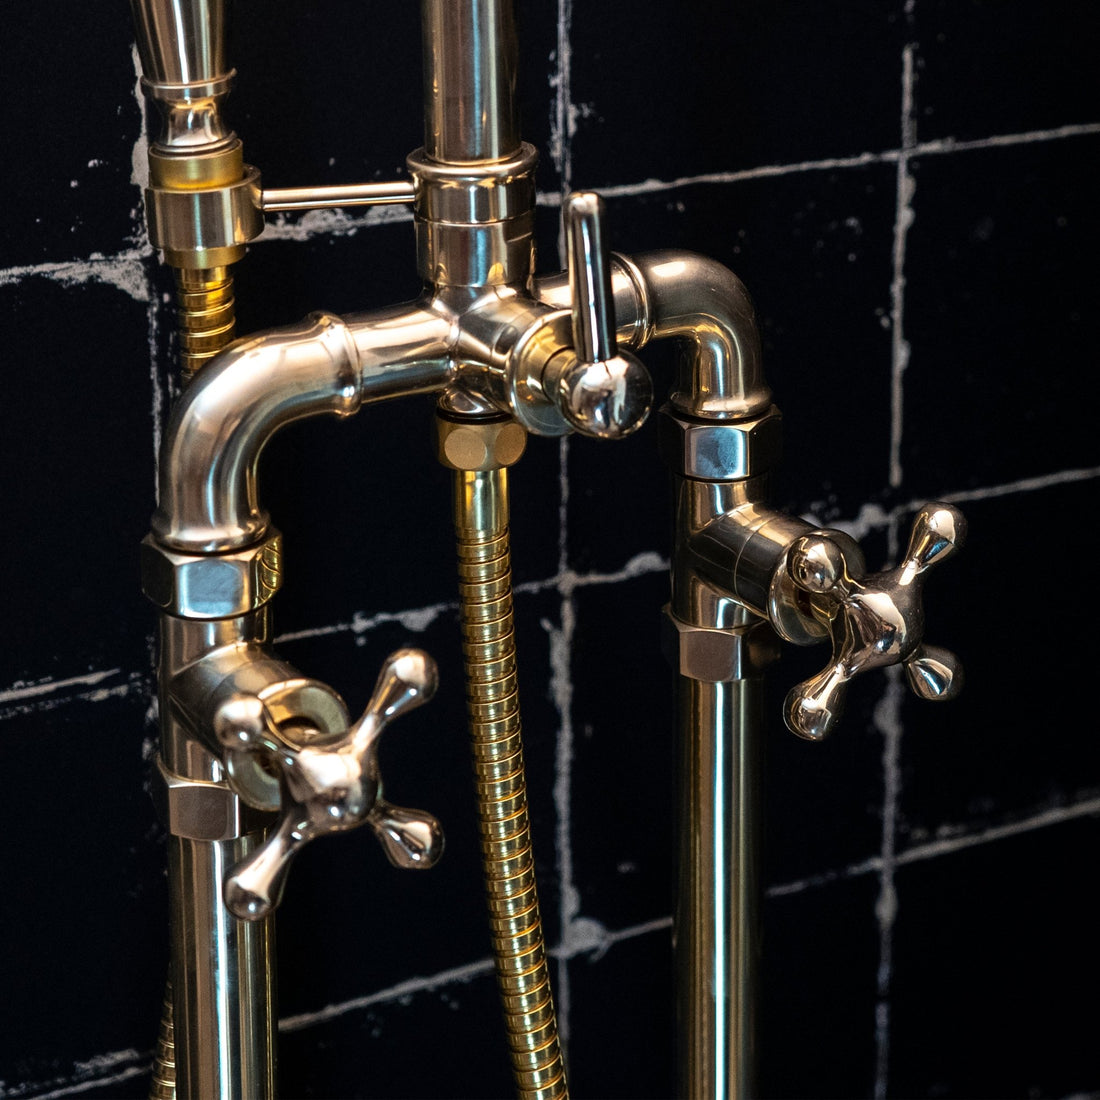 Unlacquered Brass Floor Mounted Bathtub with Handshower - Brassna